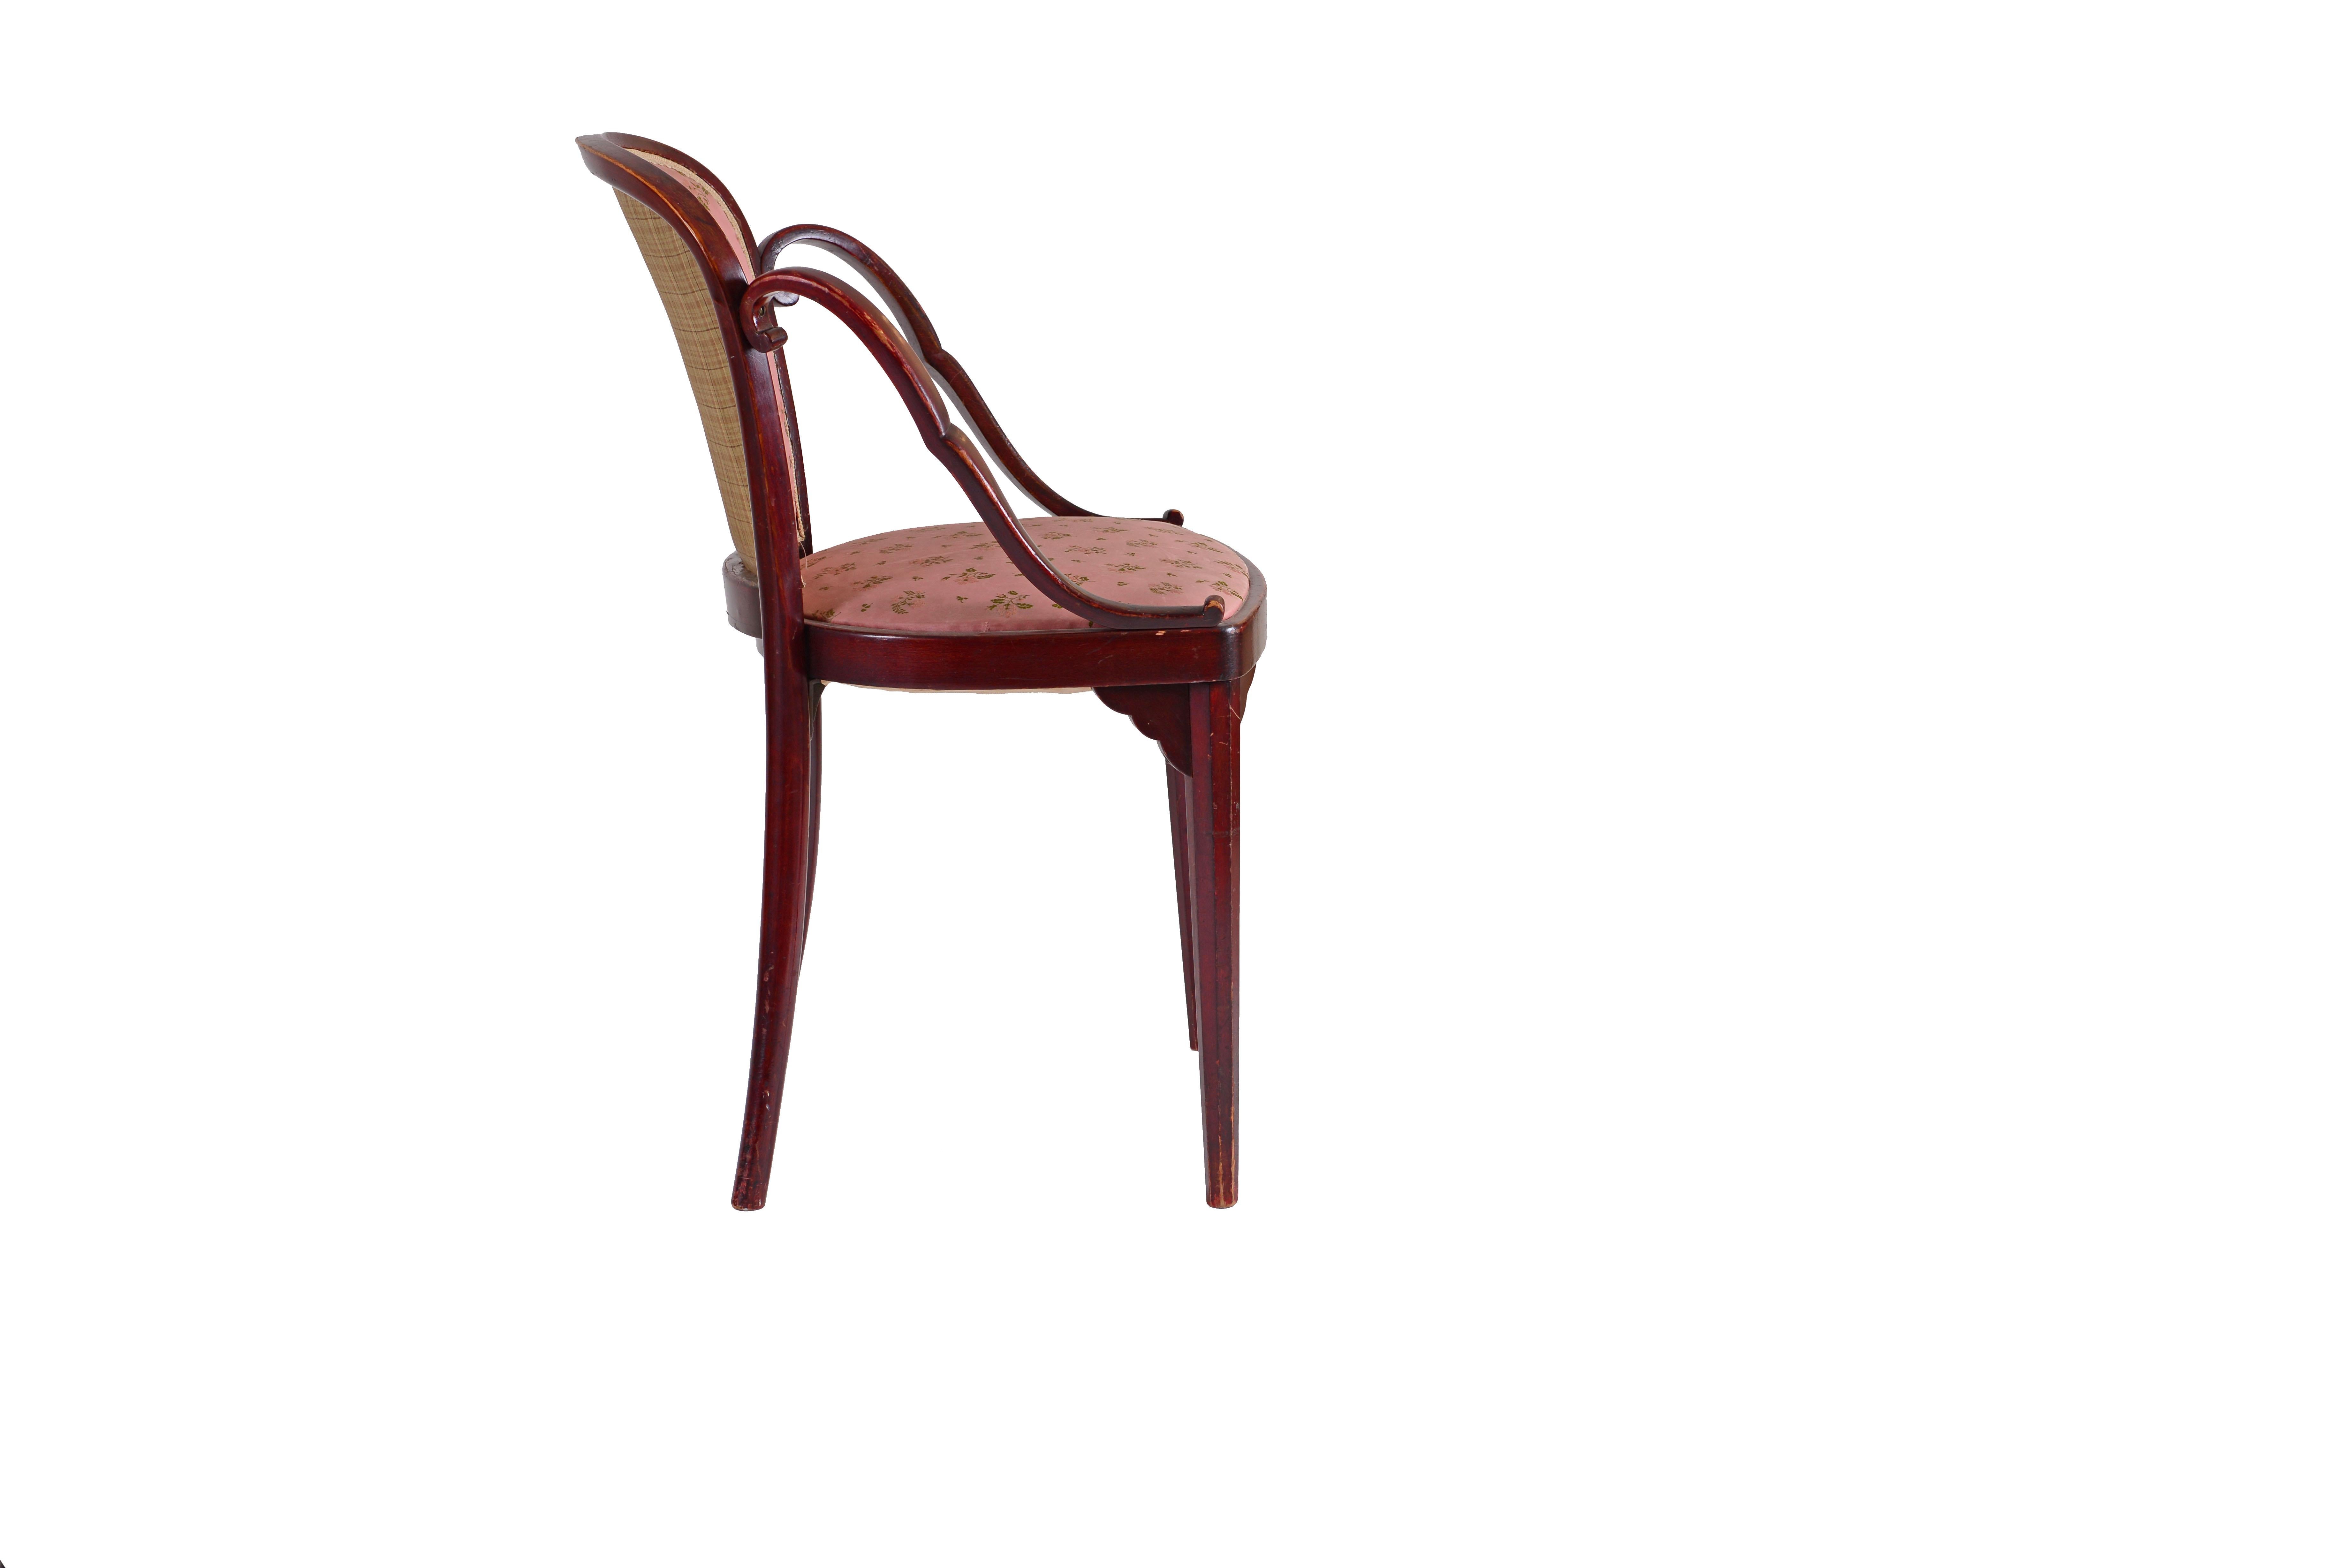 Ein sehr seltener, nicht dokumentierter Stuhl von Josef Hoffmann und J&J Kohn. Ein identischer Stuhl mit Lederbezug ist ebenfalls erhältlich.